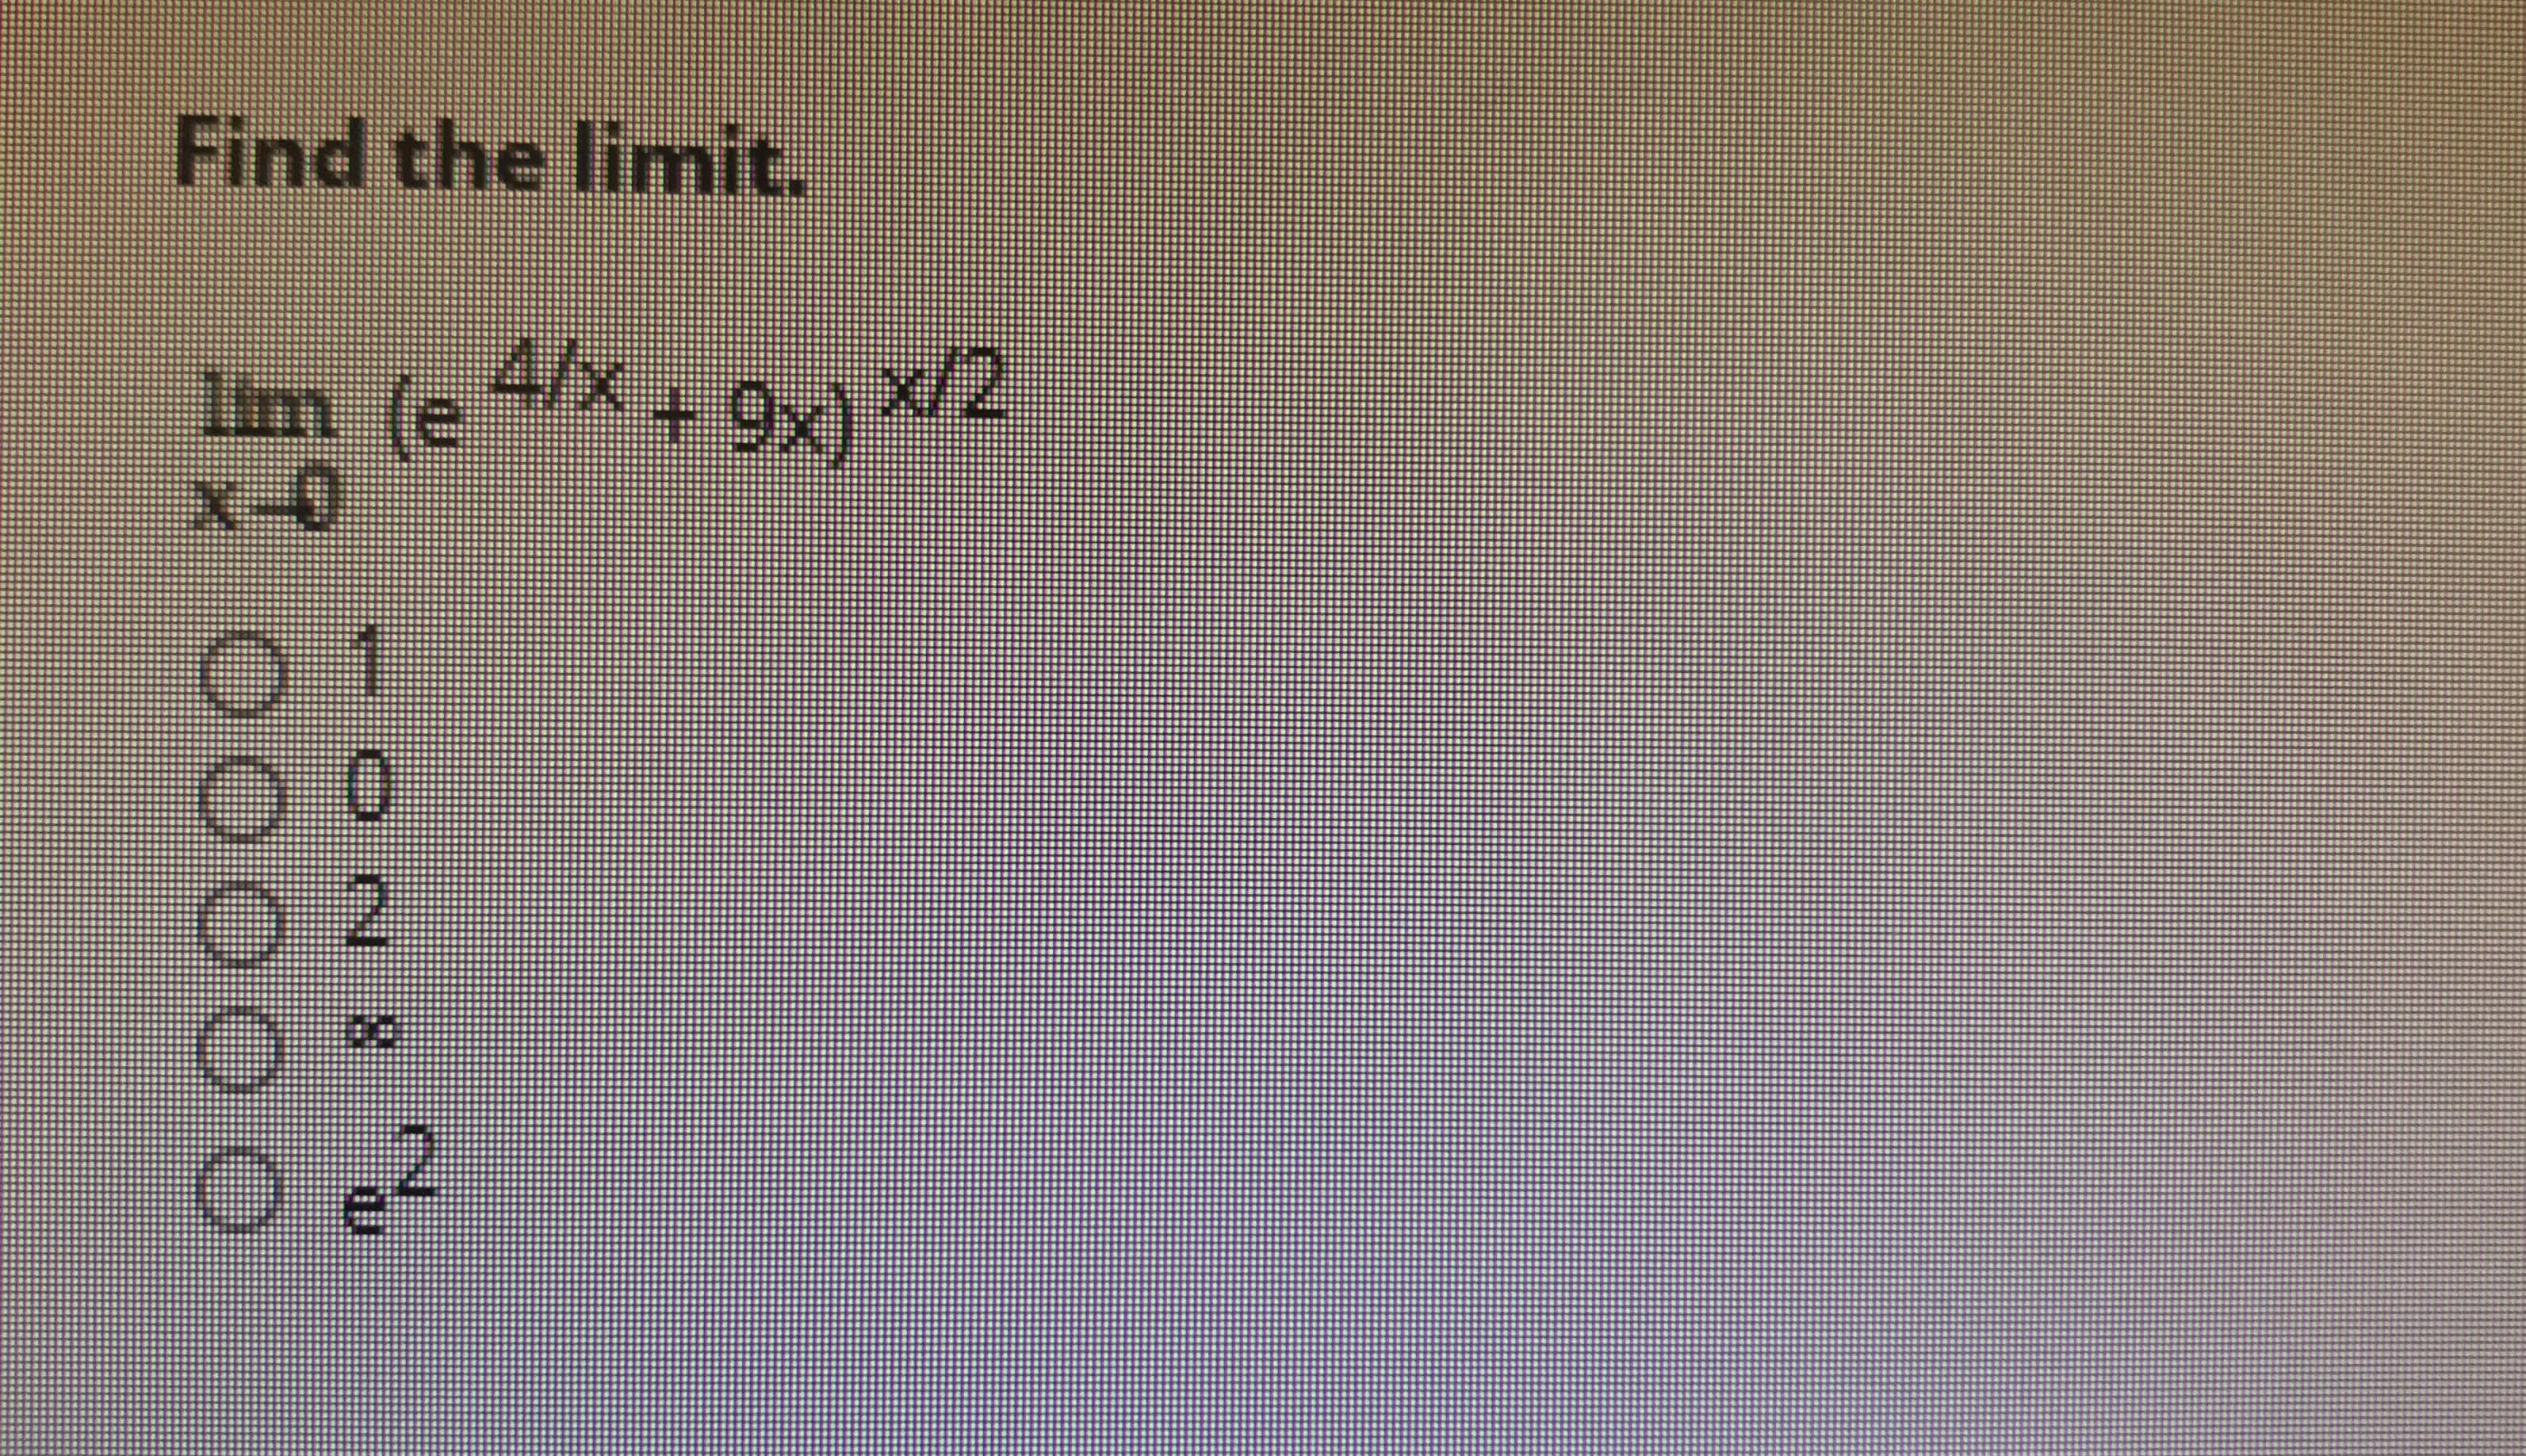 Find the limit.
Iim (e 4/x
x-0
9x) x/2
